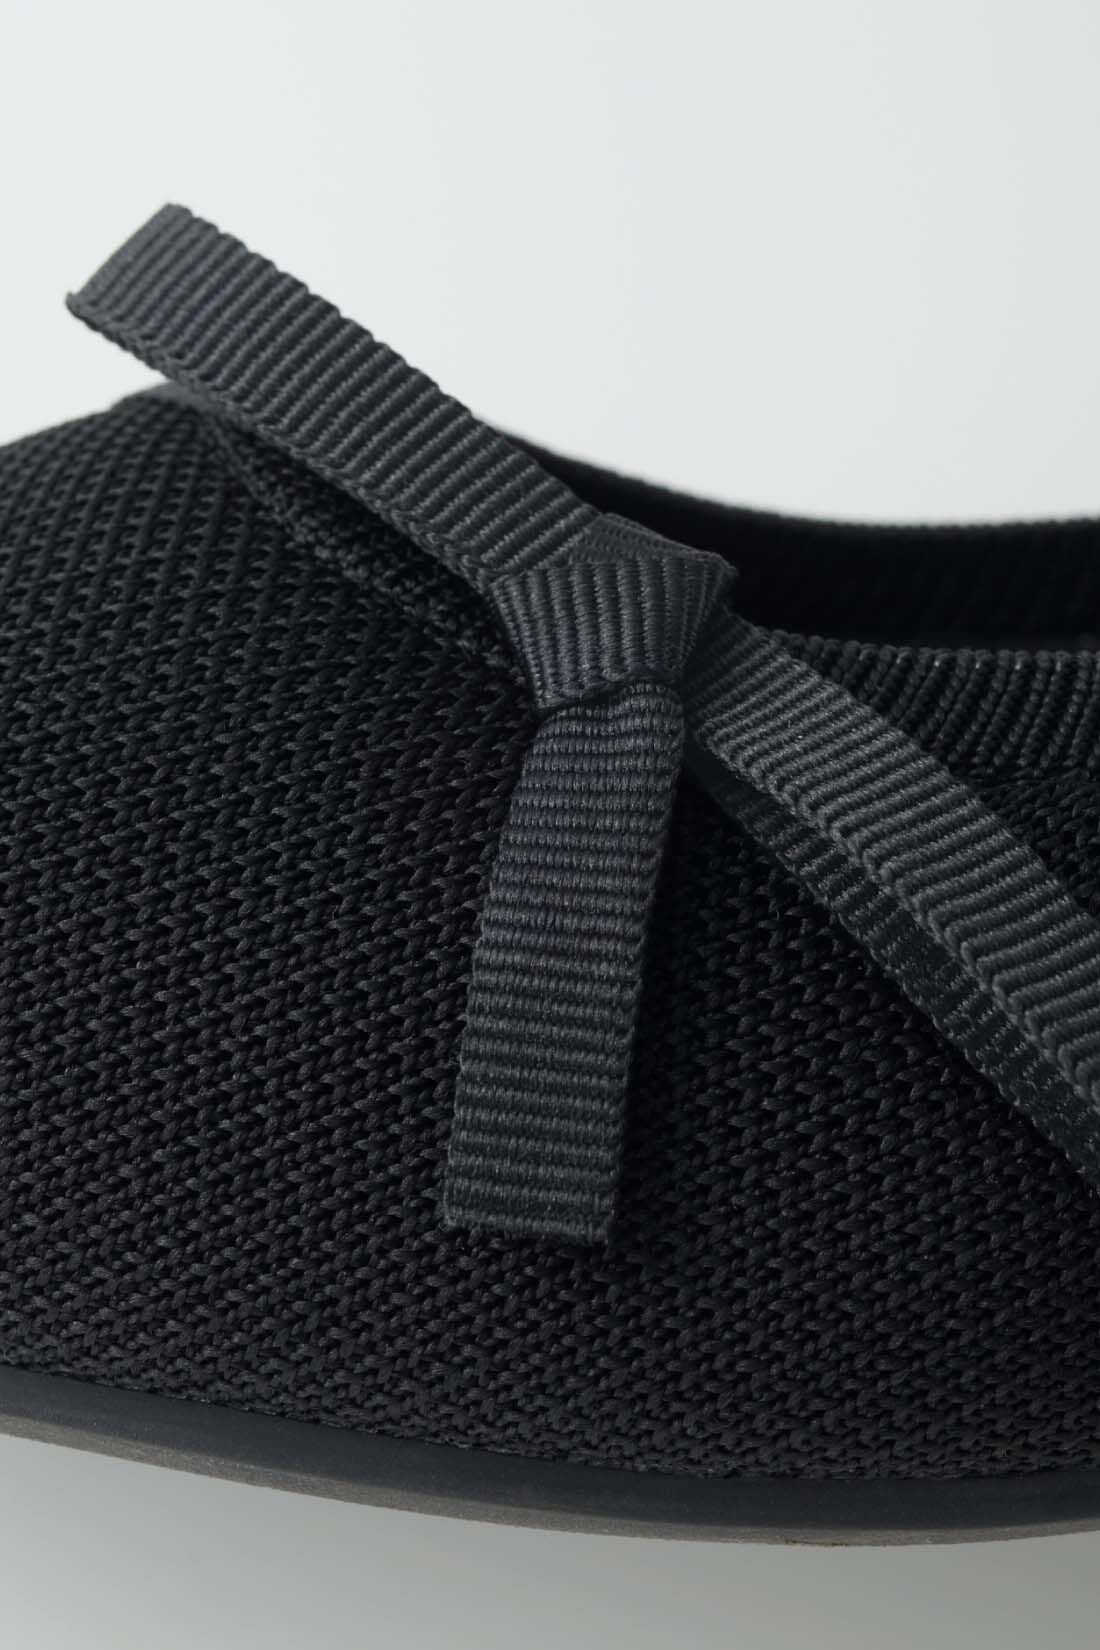 fashion special|【3～10日でお届け】IEDIT[イディット]　ふかふかインソールで快適な グログランリボンの上品ニットパンプス〈ブラック〉|外側のマットなニット素材は、足にフィットしやすい伸びやかな履き心地。